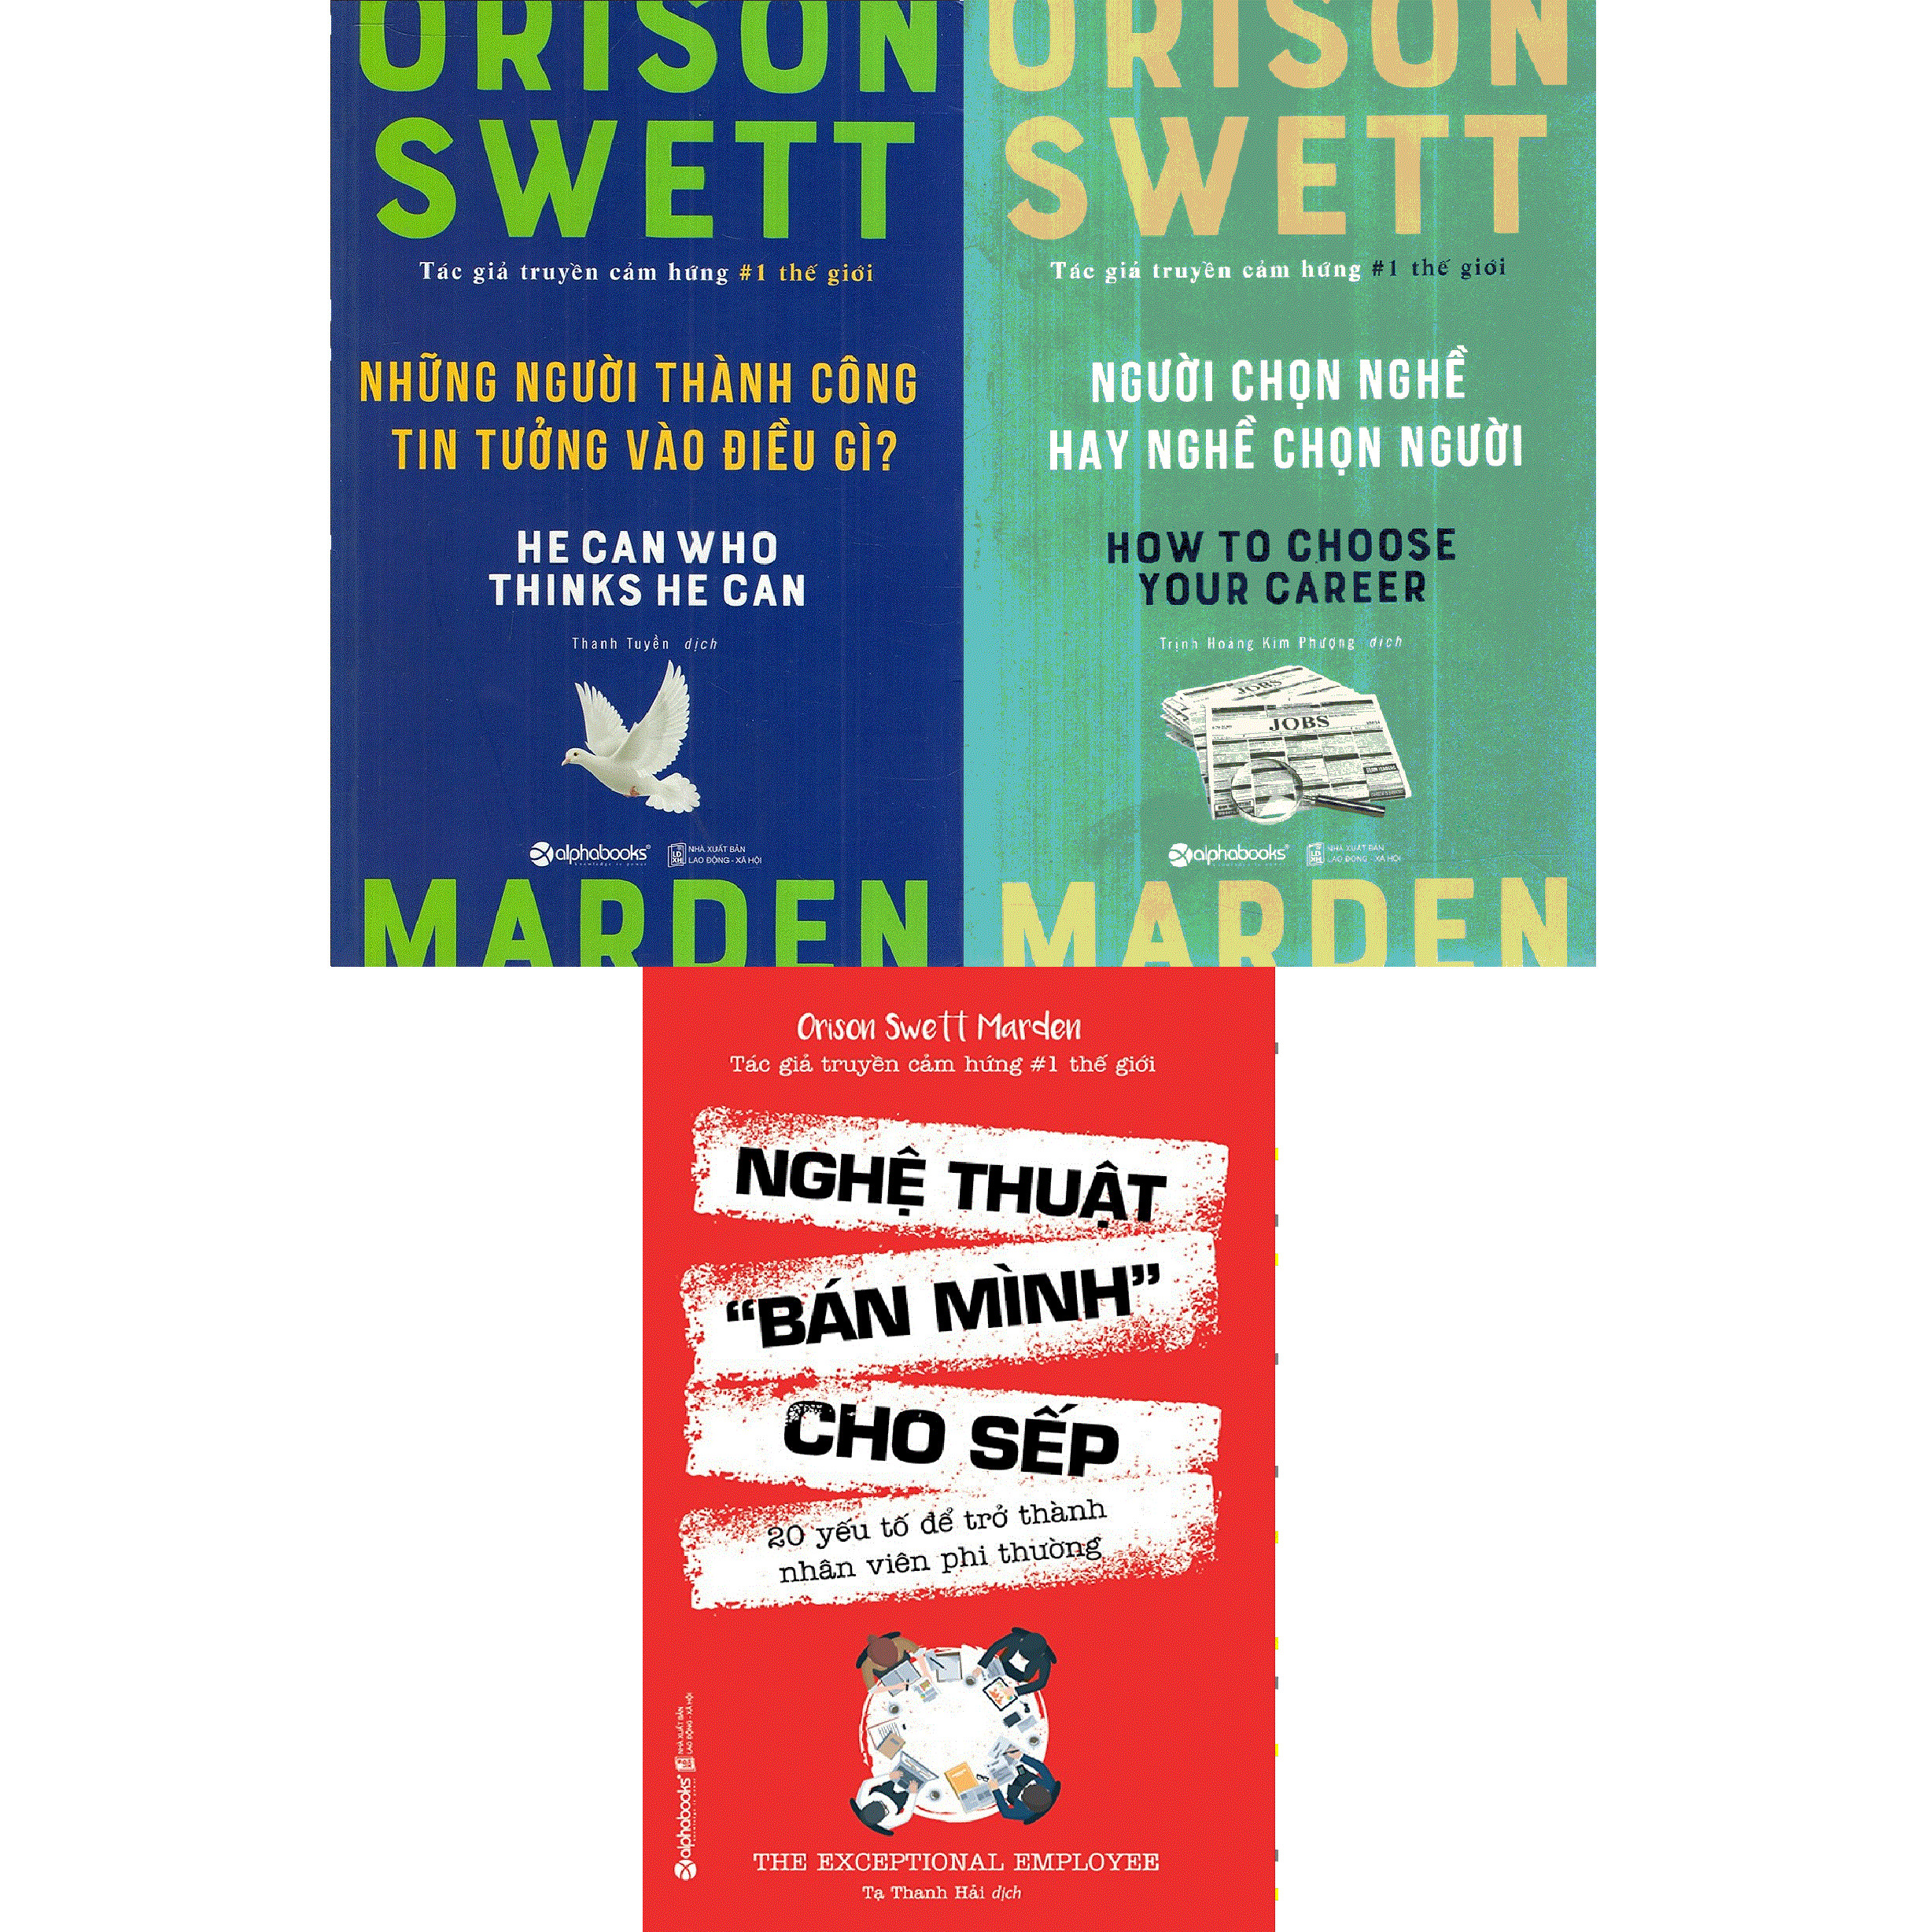 Bộ 3 Cuốn Sách Của Orison Swett Marden - Tác Giả Truyền Cảm Hứng Số 1 Thế Giới ( Nghệ Thuật “Bán Mình” Cho Sếp + Người Chọn Nghề Hay Nghề Chọn Người + Những Người Thành Công Tin Tưởng Vào Điều Gì? )(Tặng Tickbook đặc biệt)